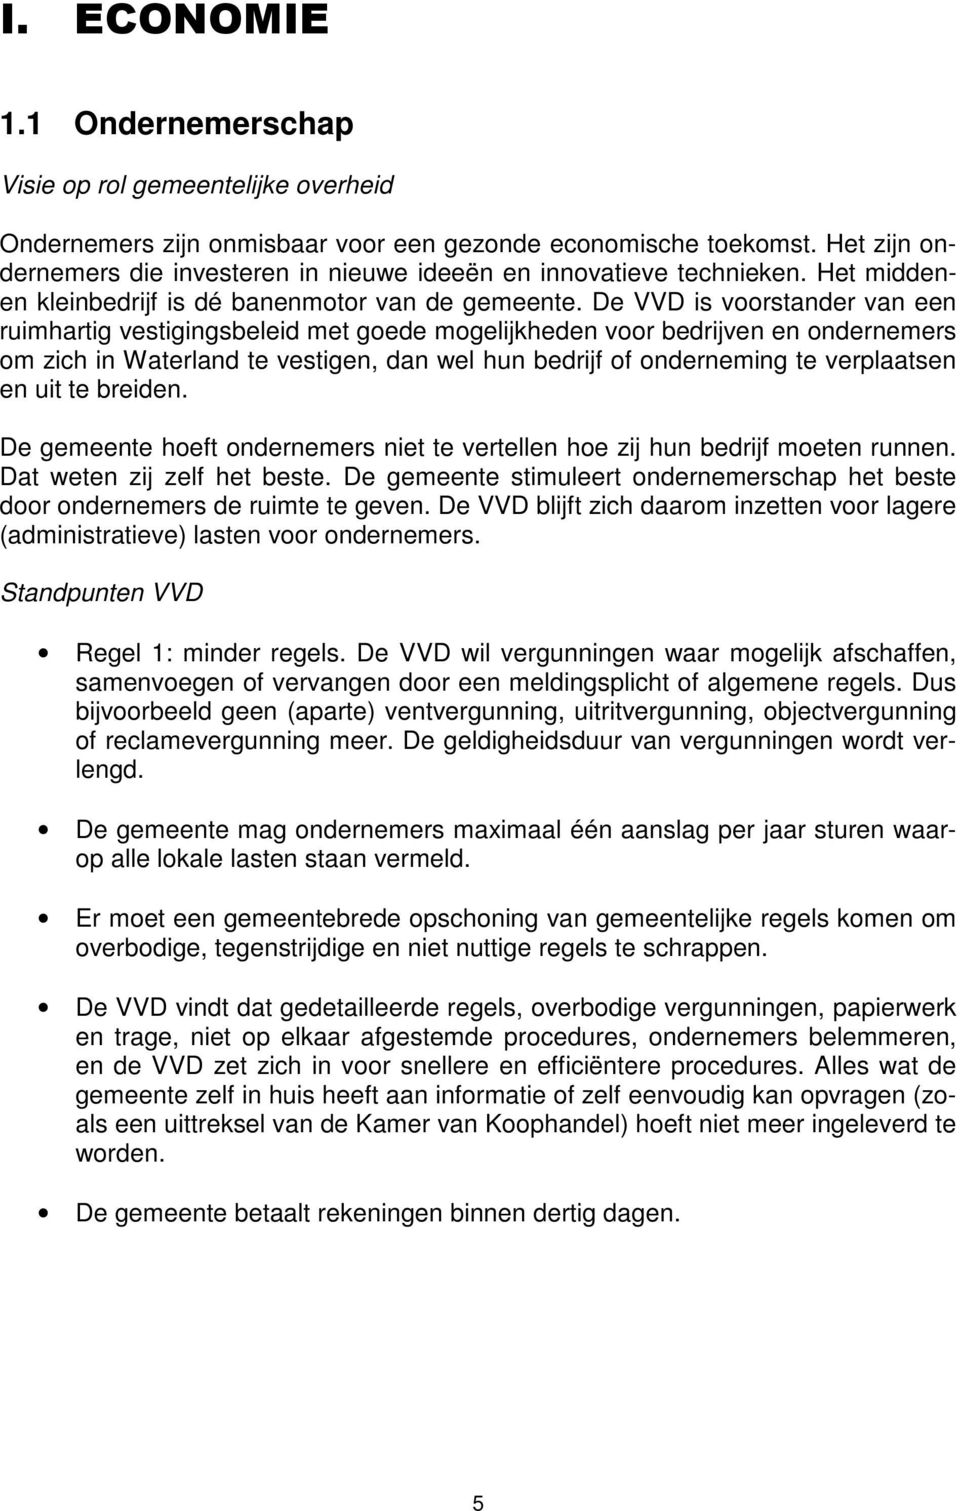 De VVD is voorstander van een ruimhartig vestigingsbeleid met goede mogelijkheden voor bedrijven en ondernemers om zich in Waterland te vestigen, dan wel hun bedrijf of onderneming te verplaatsen en